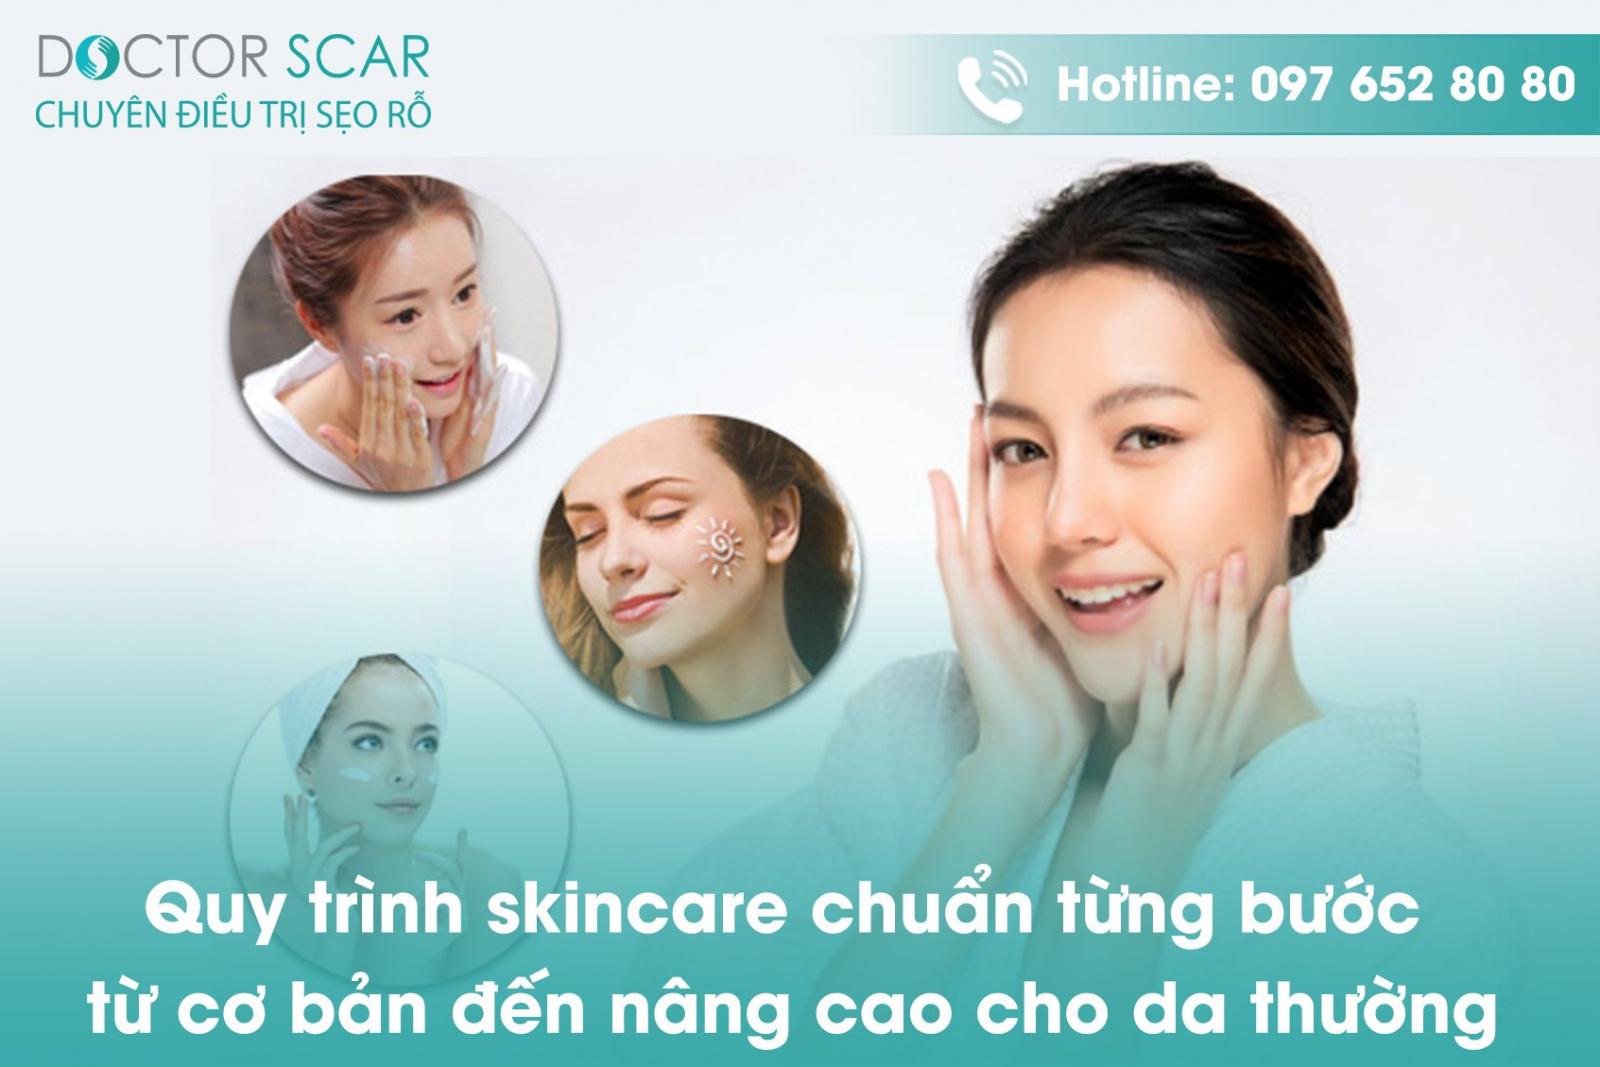 Quy trình skincare chuẩn từng bước từ cơ bản đến nâng cao cho da thường.